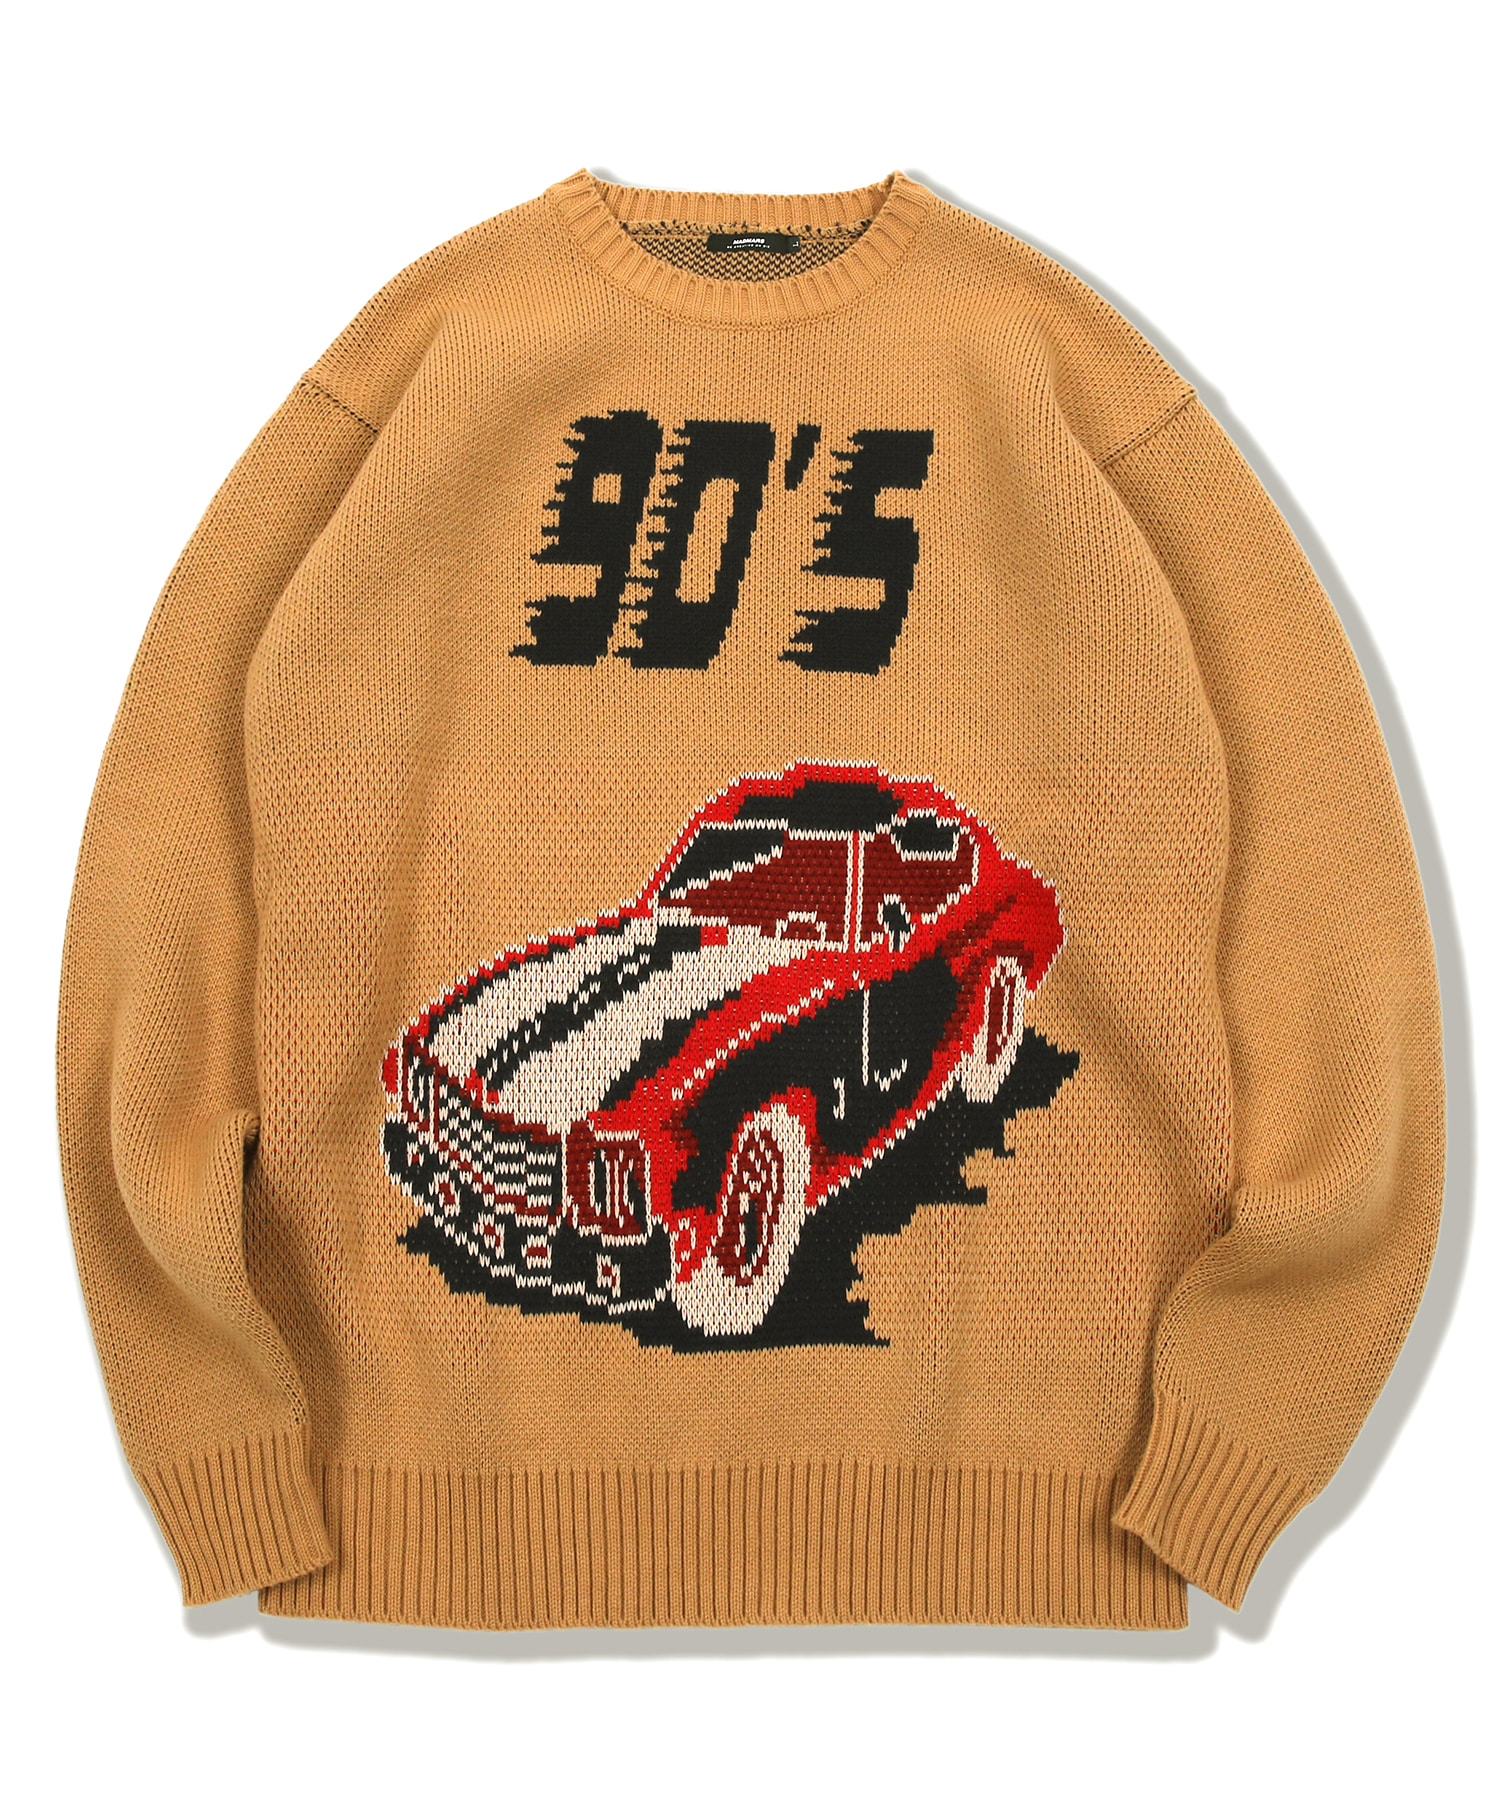 90s car knit beige